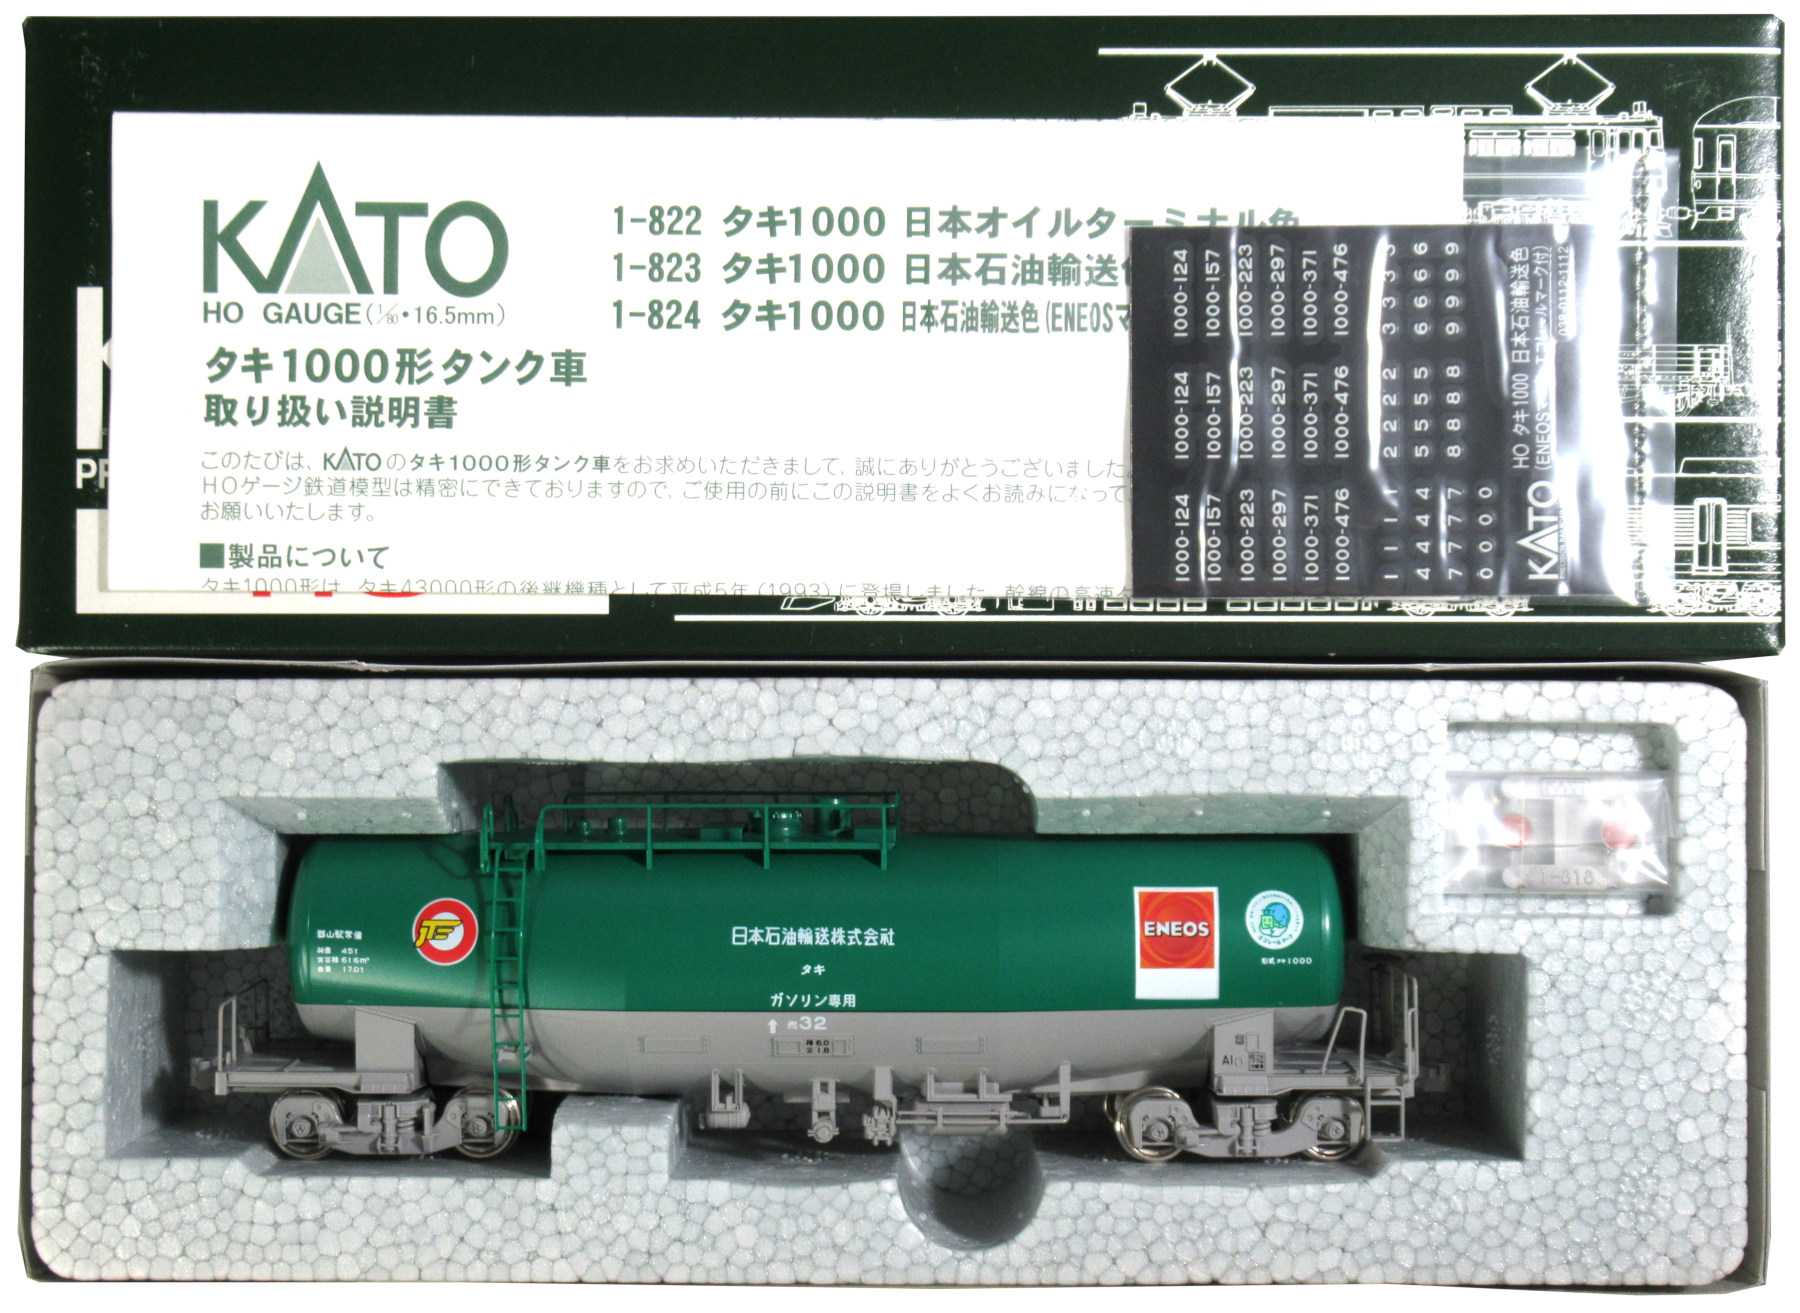 公式]鉄道模型(1-824タキ1000 日本石油輸送色 (ENEOSマーク・エコ